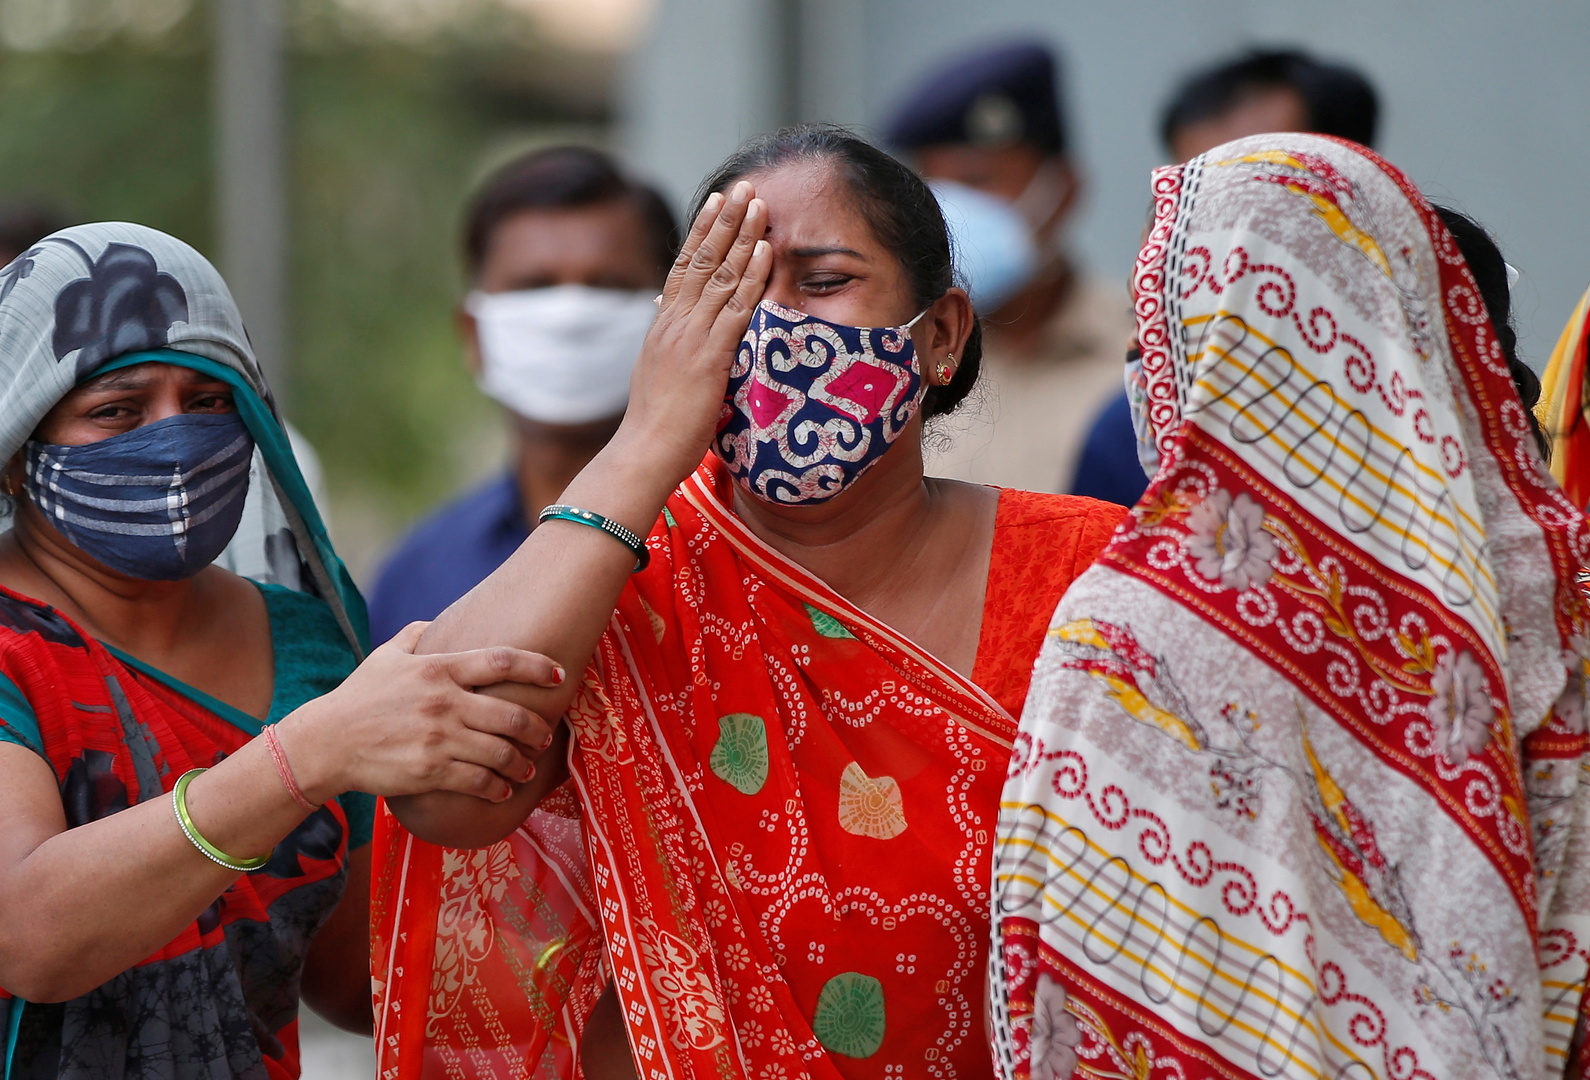 لليوم الرابع بالهند.. إصابات كورونا تتجاوز 400 ألف رغم إجراءات الإغلاق الصارمة